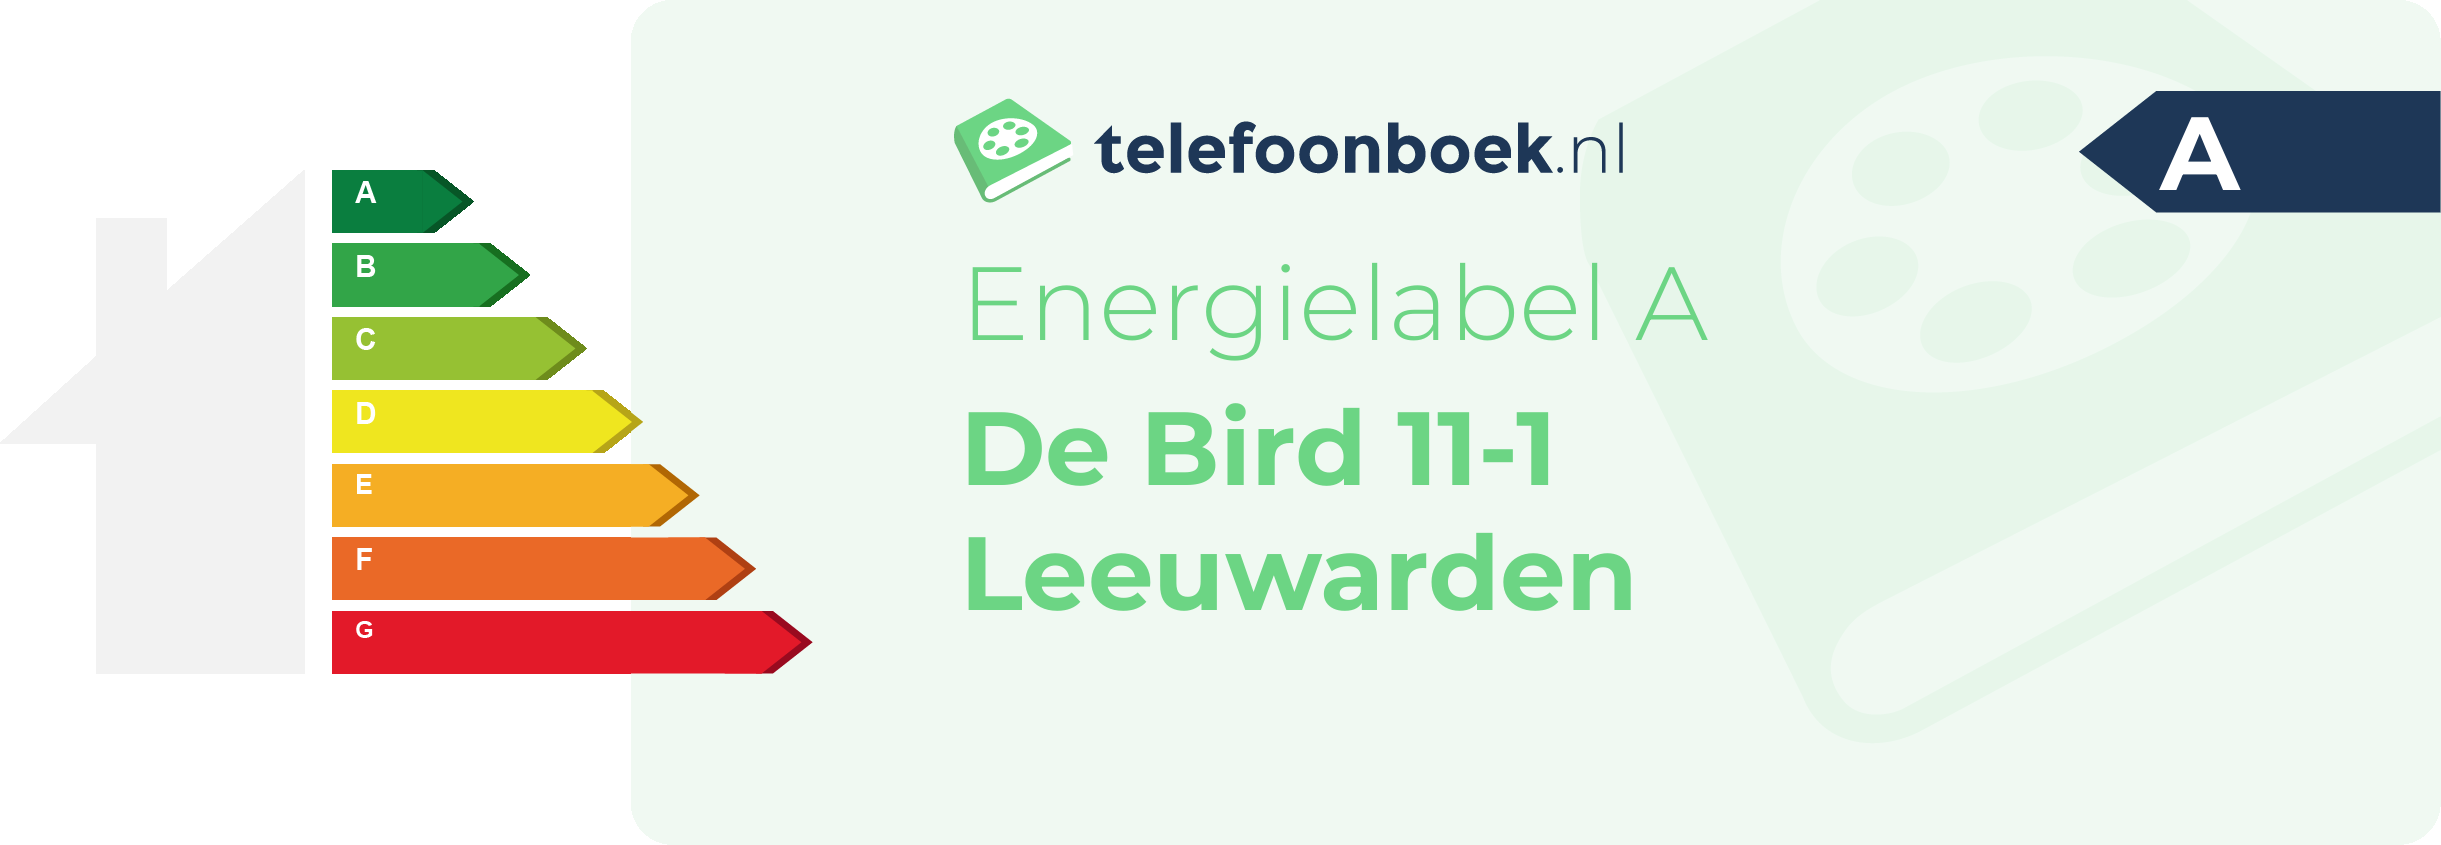 Energielabel De Bird 11-1 Leeuwarden